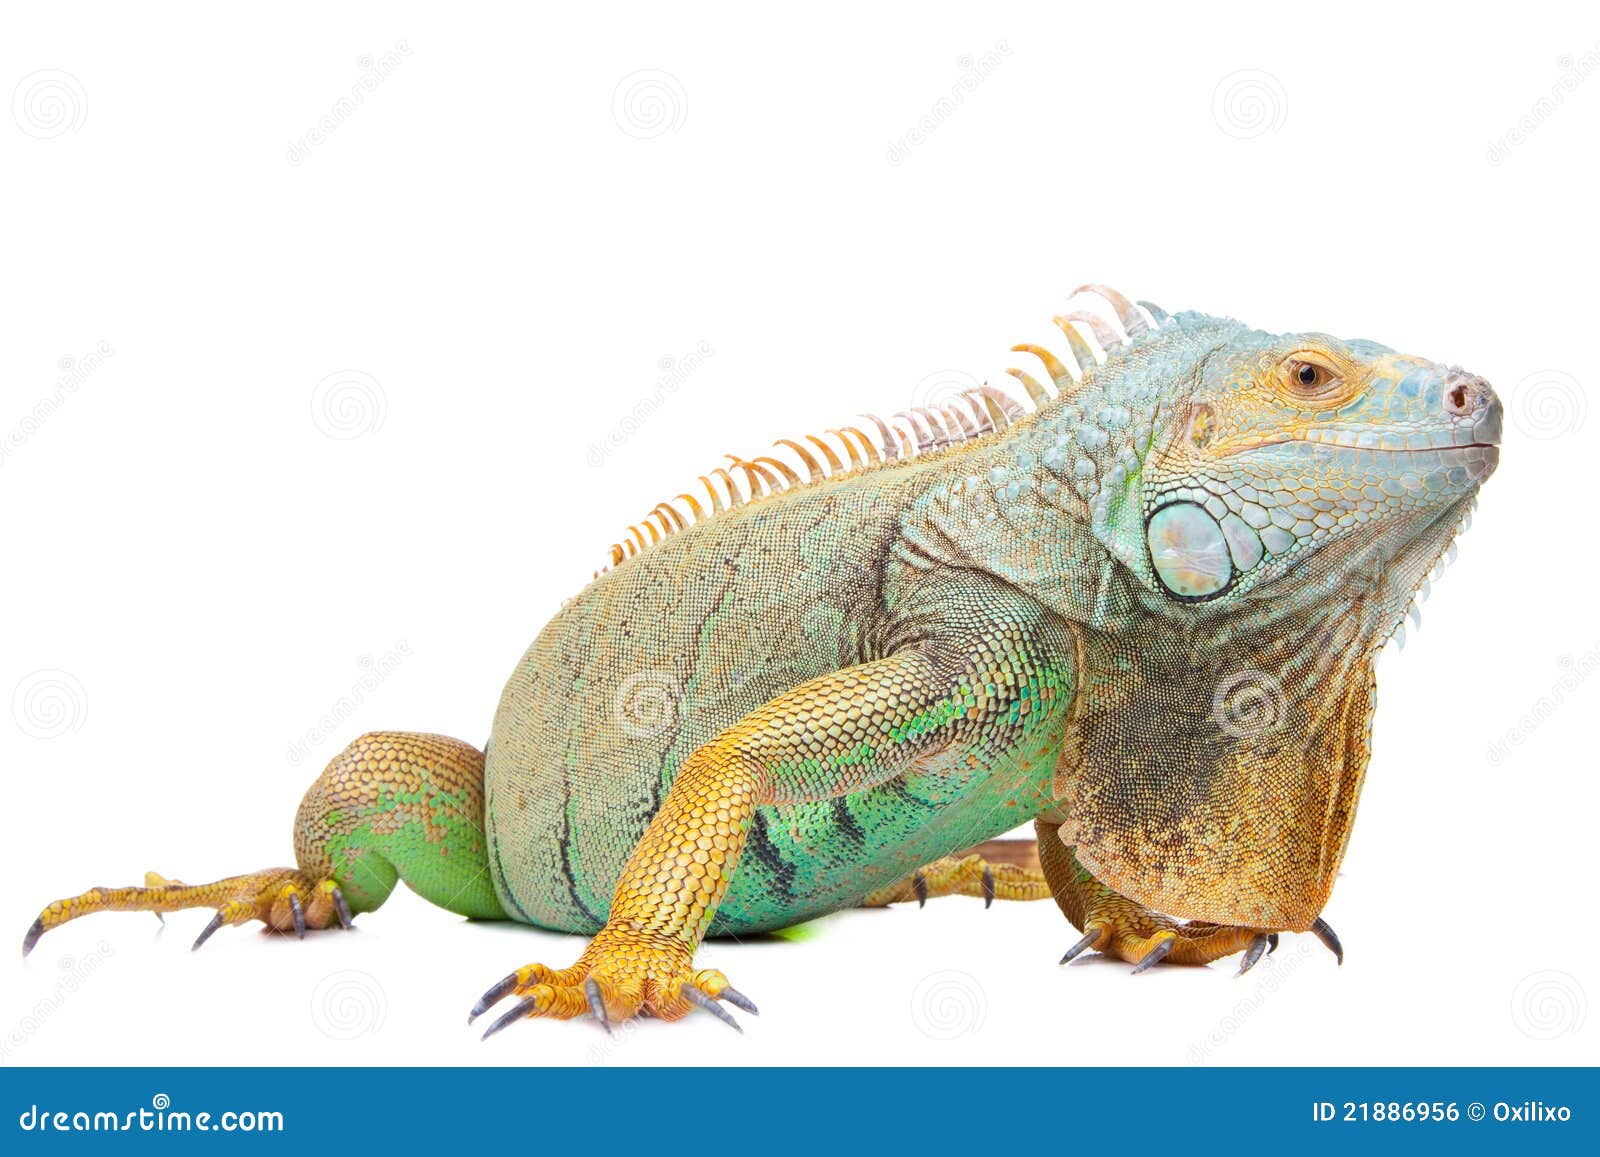 iguana on  white